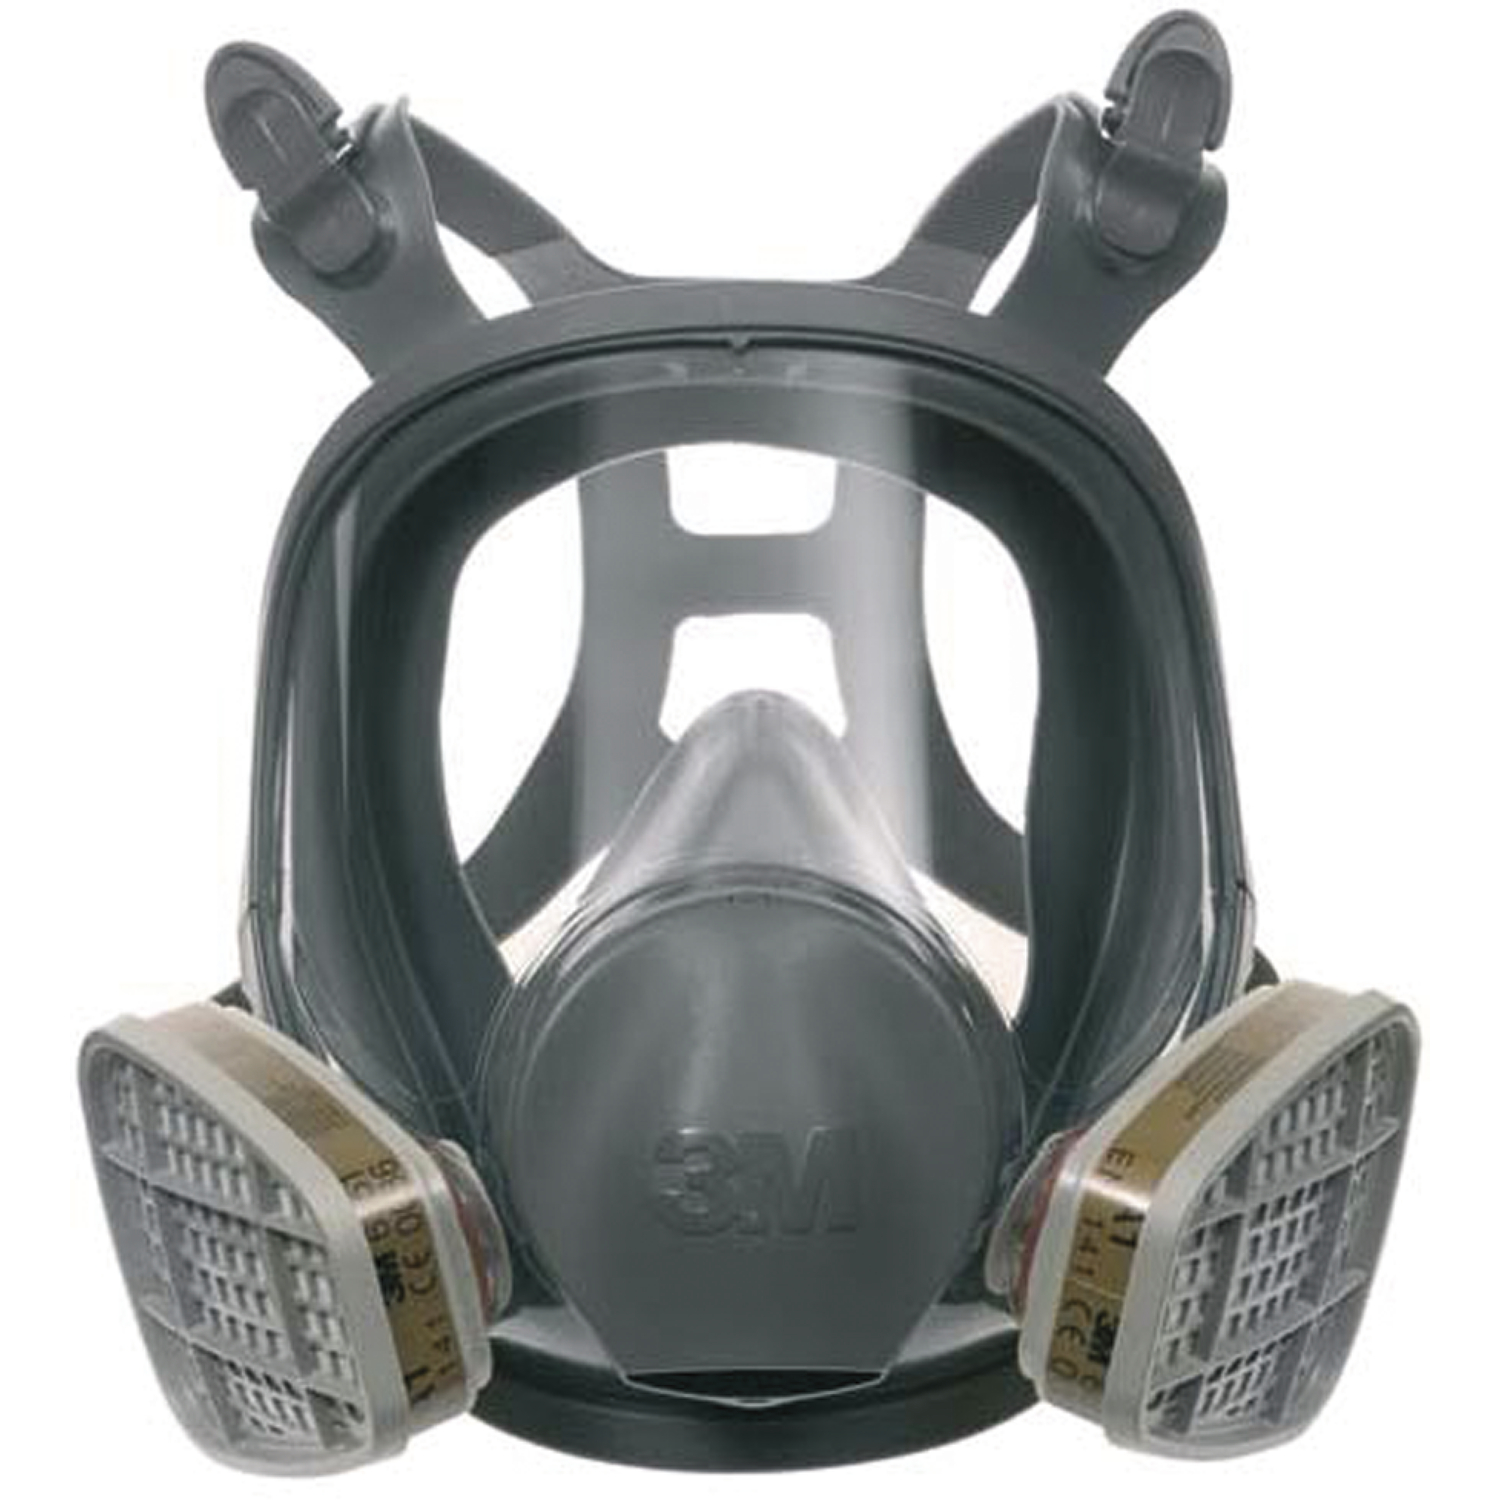 3M 6800M Atemschutzmaske Vollmaske, Augen, Nasen- und Mundschutz